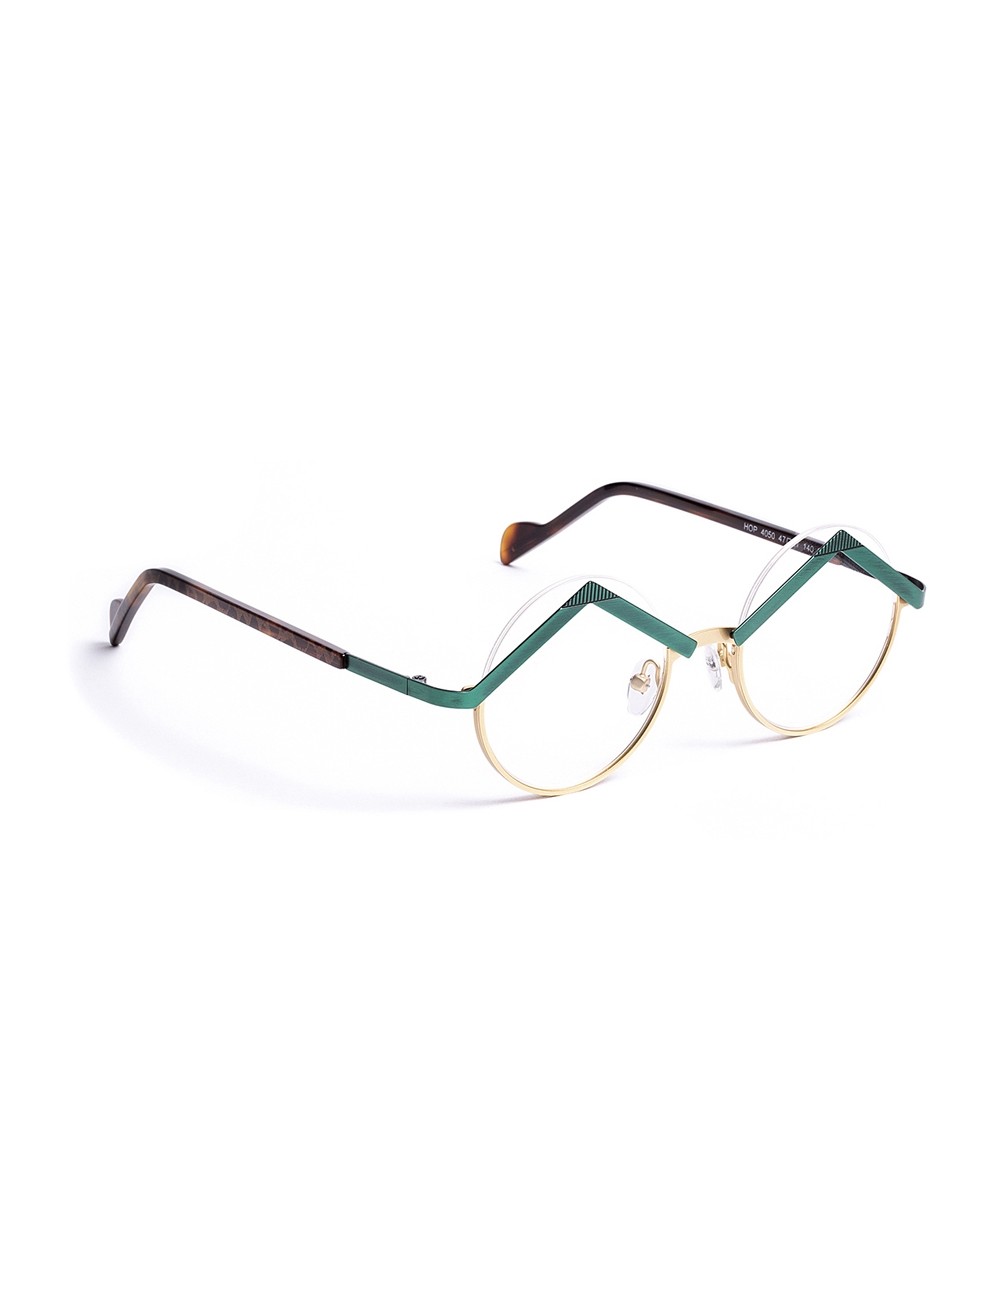 Inlefen Lunettes de lecture rondes ovales vintage unisexe lunettes de charnière de ressort Force: 4.0 1.0 à